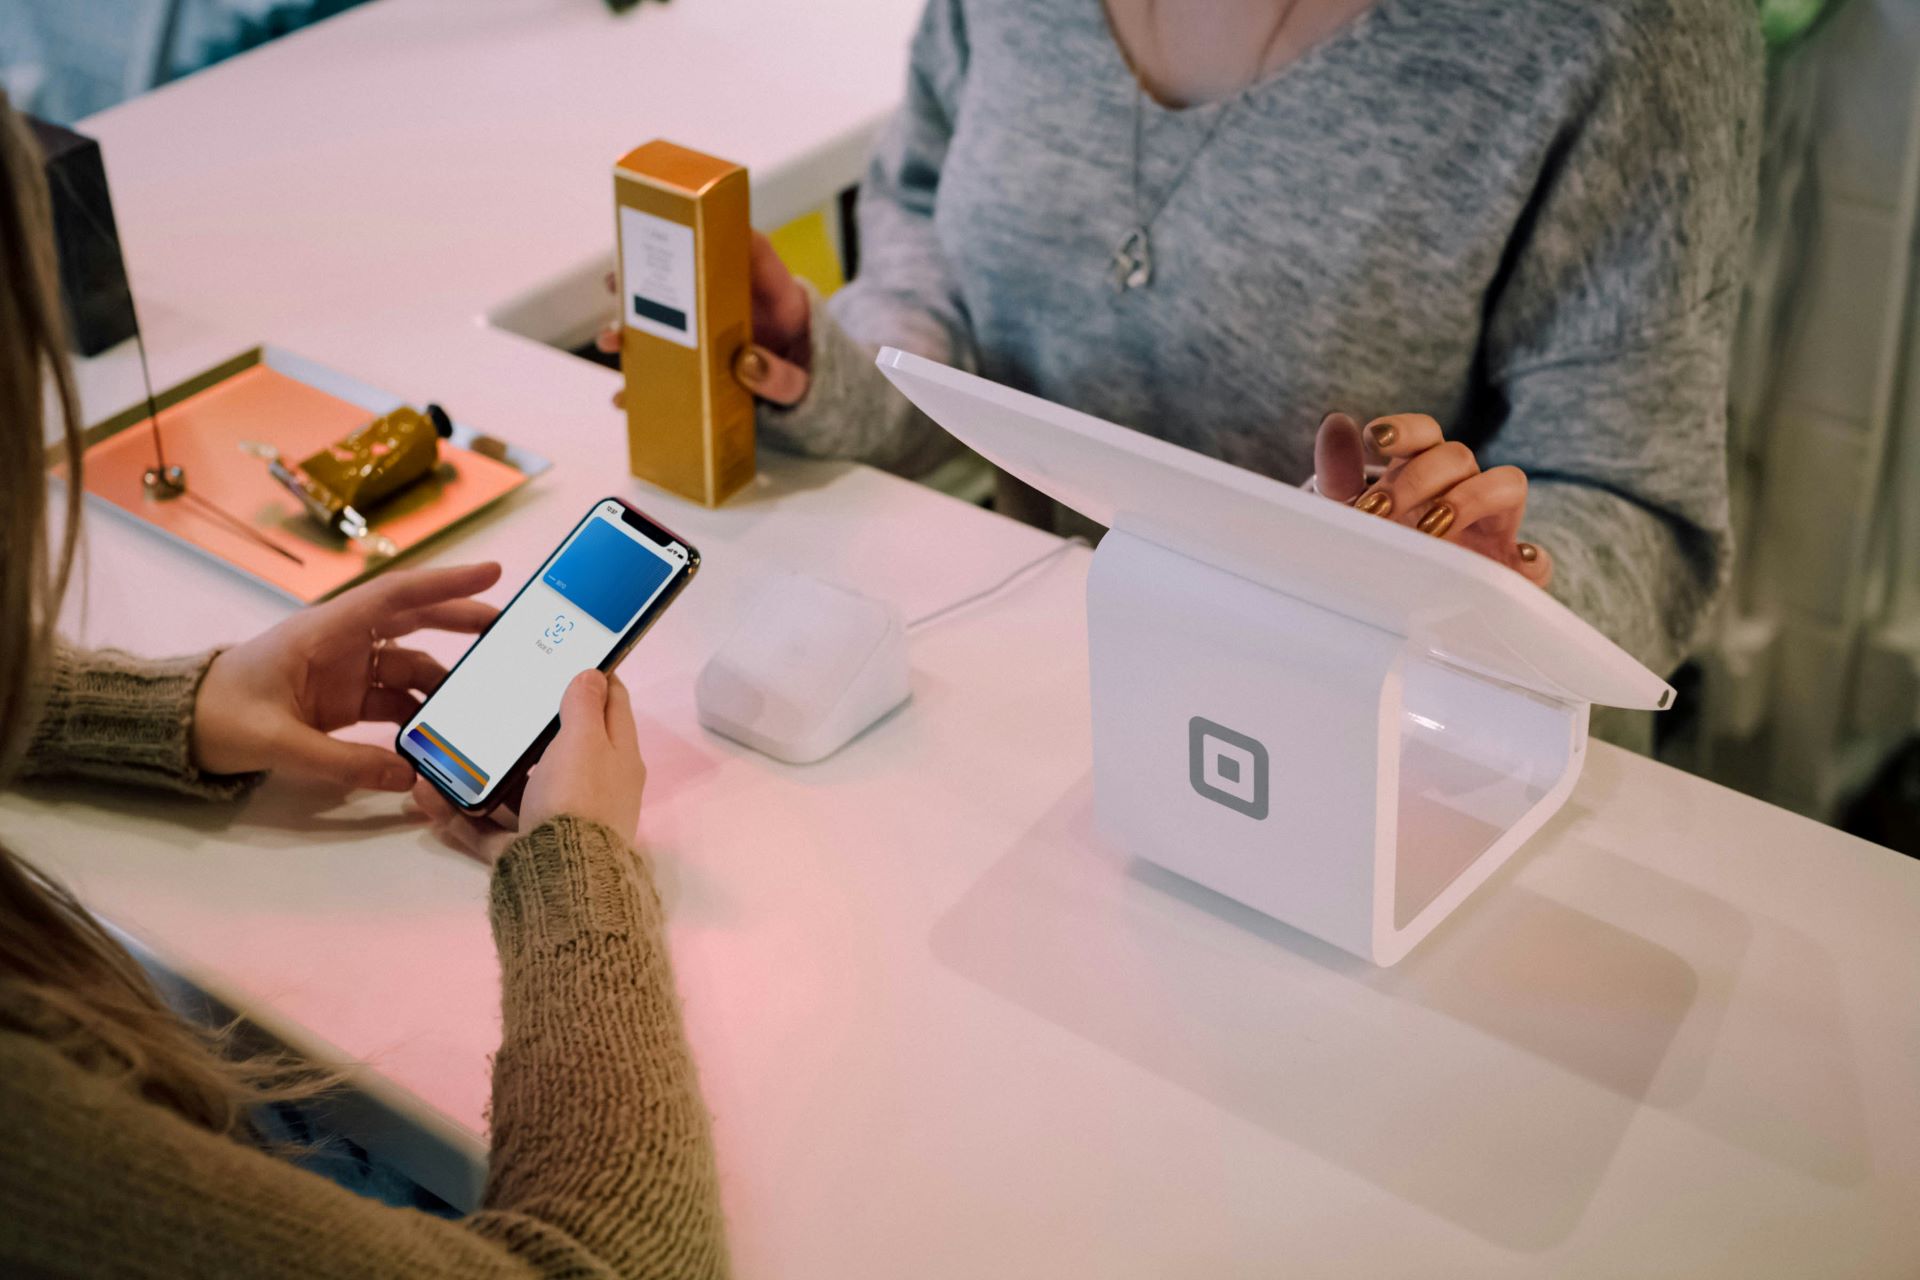 Iphone avec Apple Pay ouvert en essayant de payer sur un terminal de paiement NFC